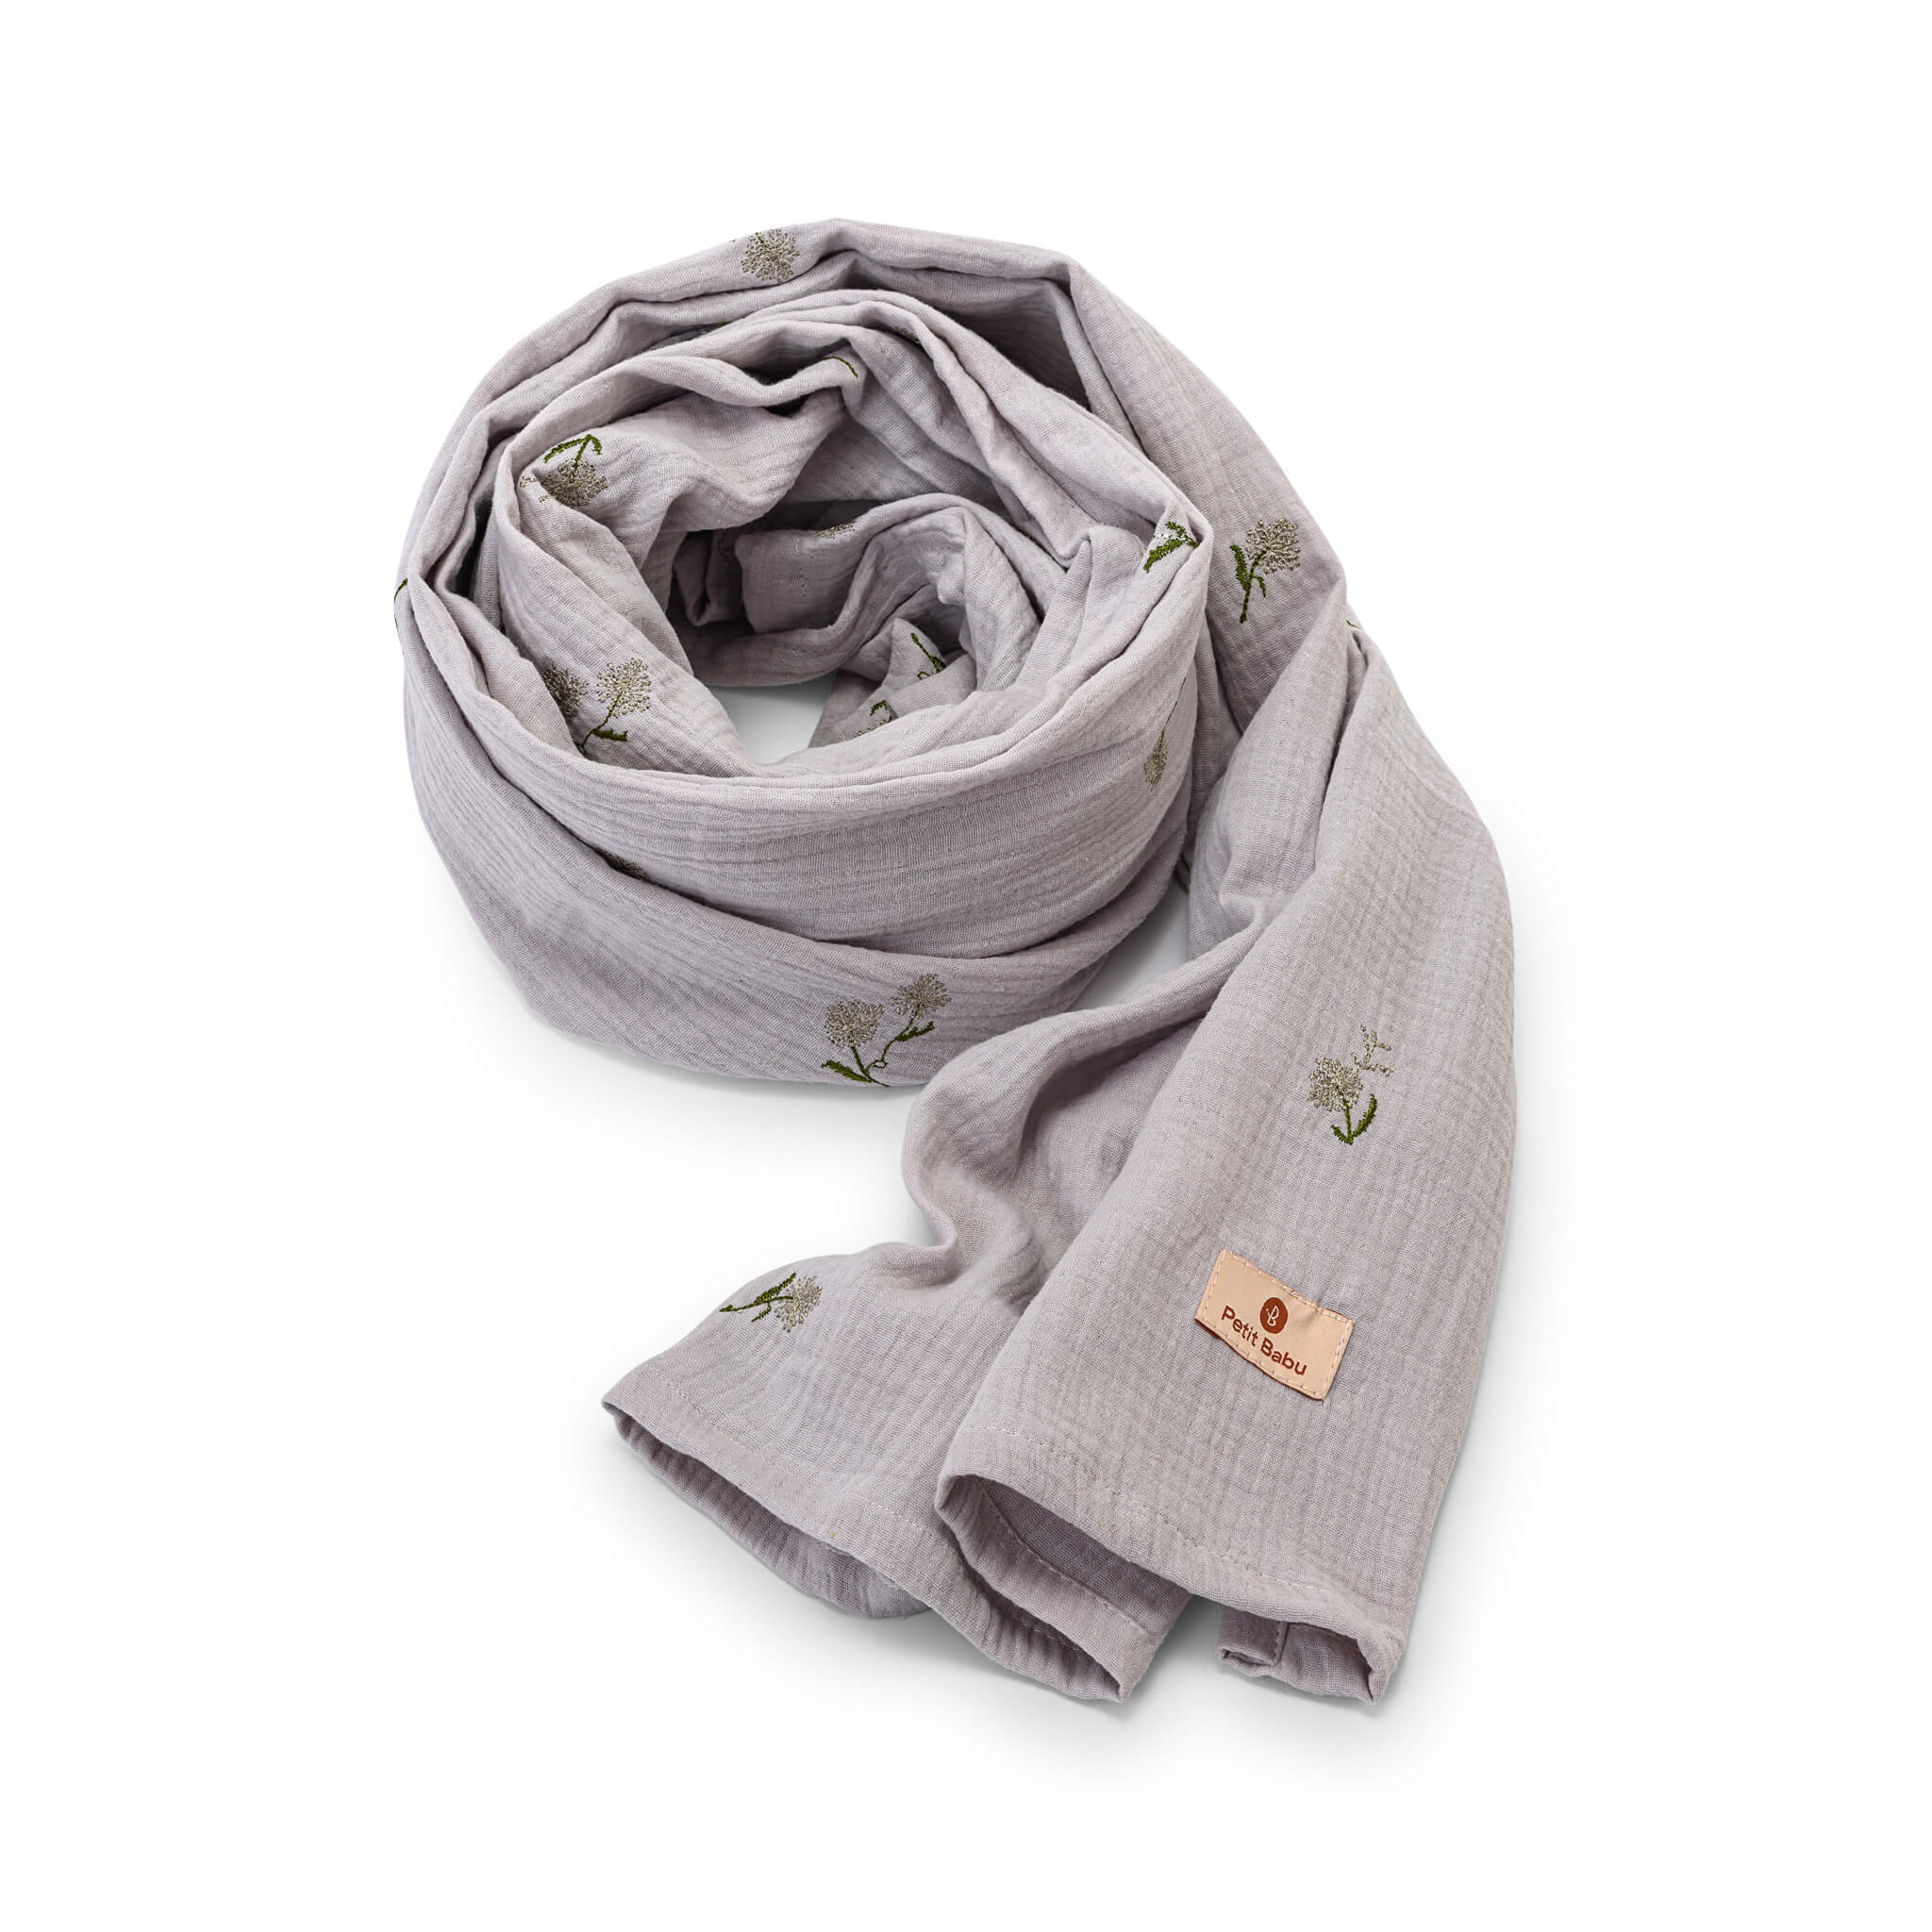 Nursing scarf - Gray